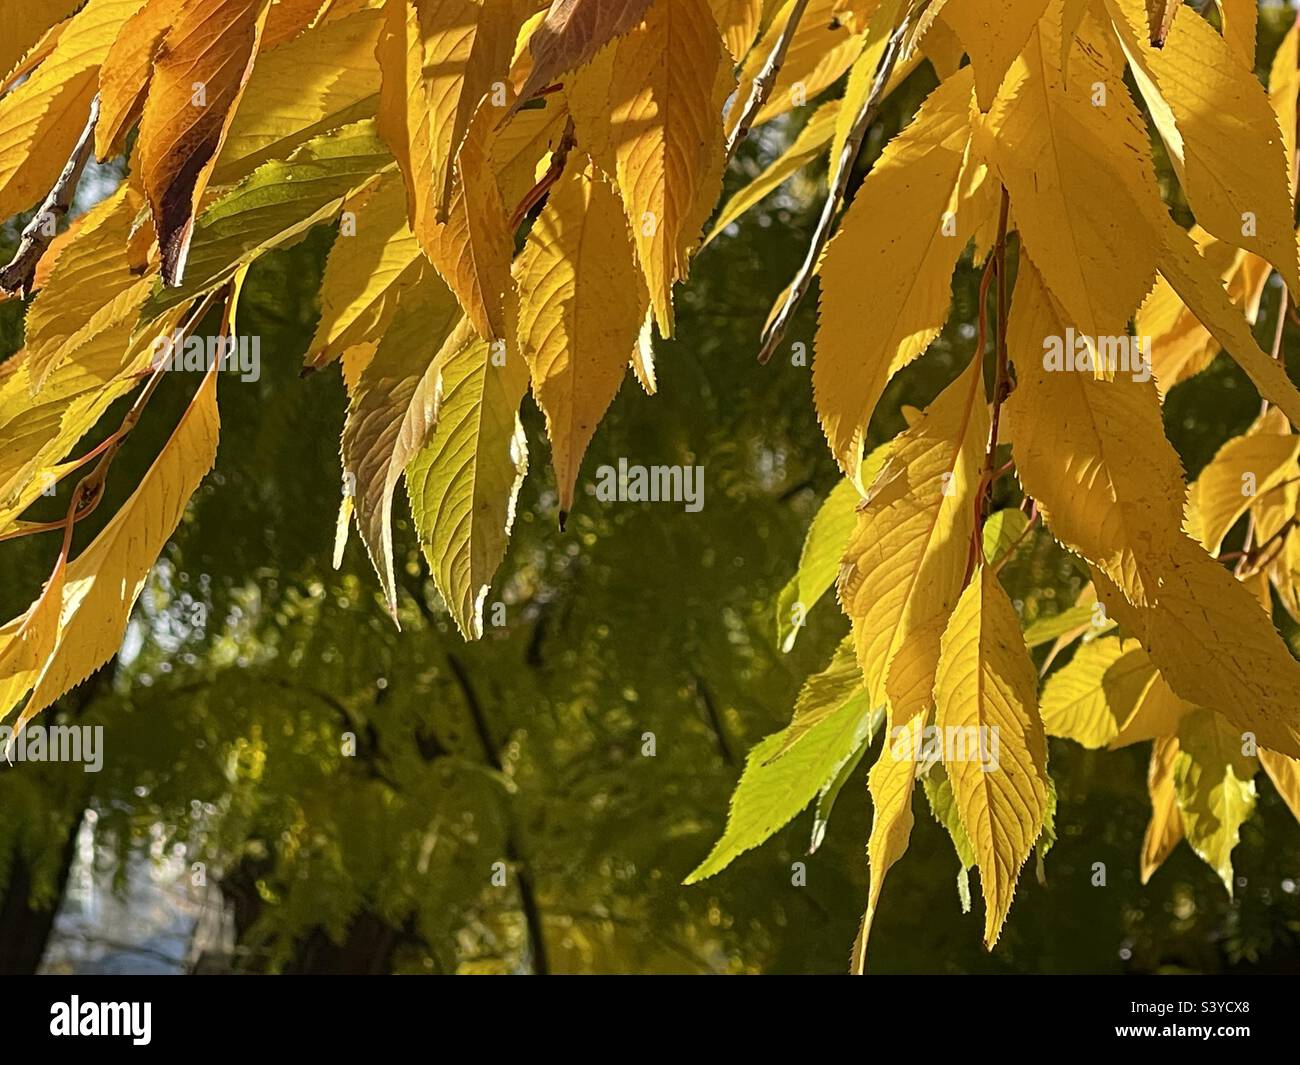 Des feuilles de cerisier jaune éclatant et doré sont en feuilles pendant la saison d'automne dans une cour de l'Utah, aux États-Unis. Un simple exemple de grandeur et de beauté de mère nature, ce que nous tenons souvent pour acquis. Banque D'Images